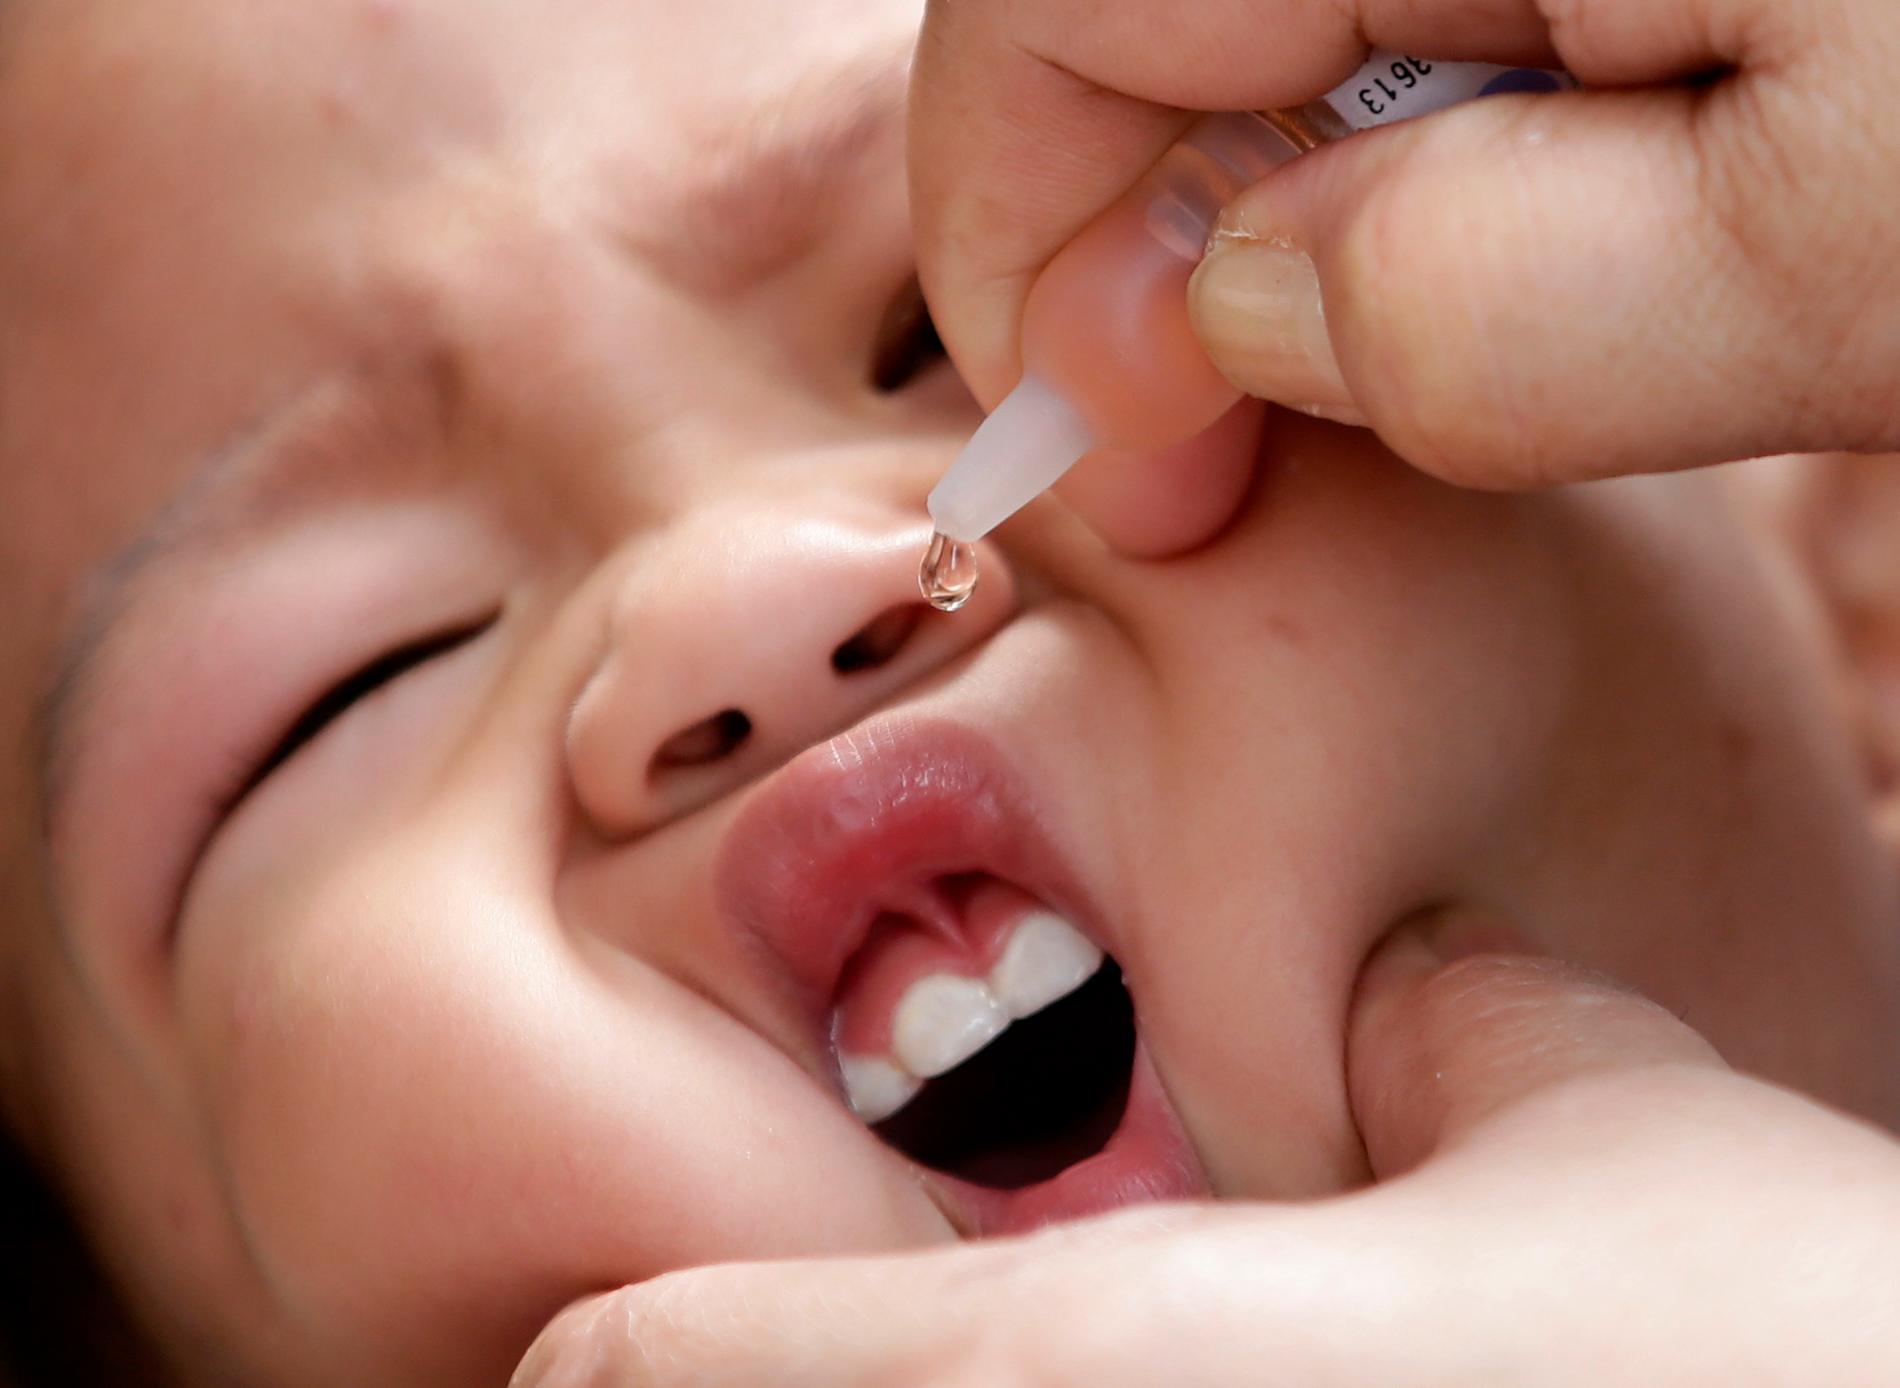 Rotavirusvaccinet ges som lösning i munnen. En studie i Region Jönköping visar att antalet barn inlagda på sjukhus på grund av magsjuka orsakat av rotavirus halverats sedan de började erbjuda vaccinet 2014. Arkivbild.